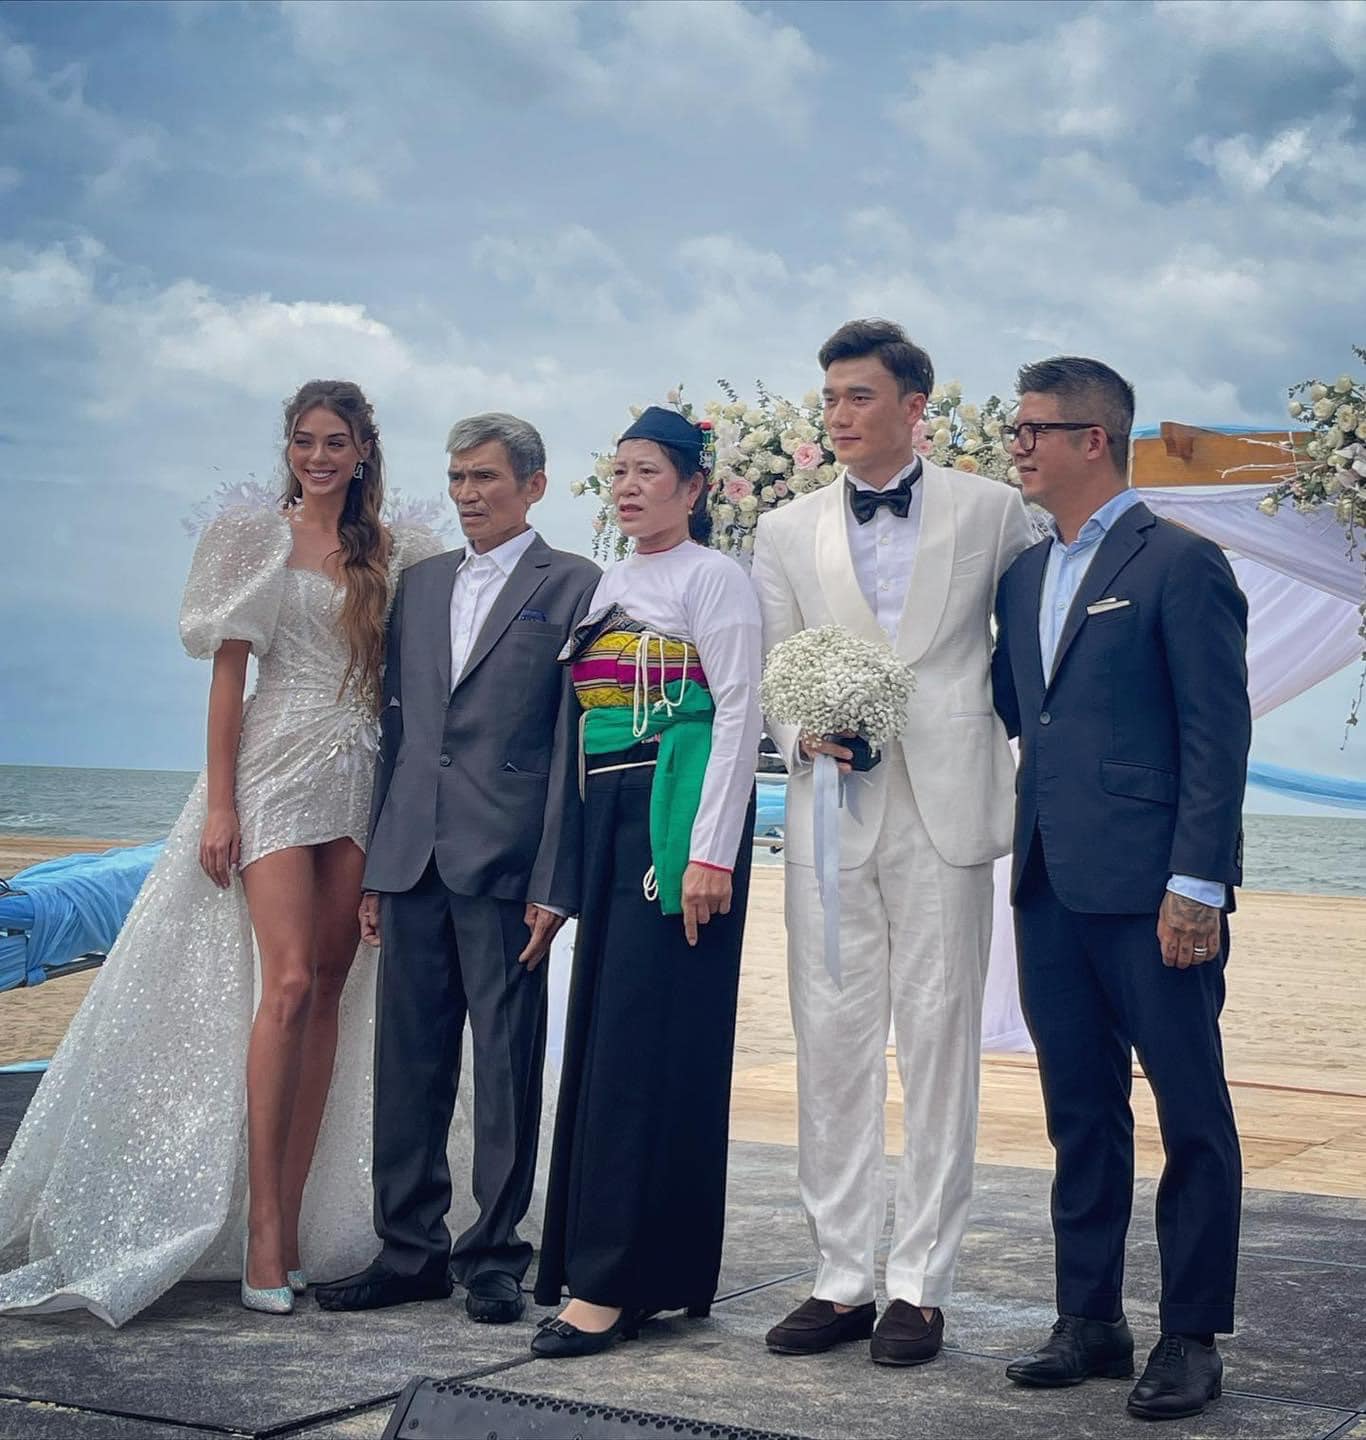 HOT: Thủ môn Bùi Tiến Dũng tổ chức đám cưới với bạn gái Tây, dàn tuyển thủ Việt Nam đều góp mặt chung vui - Ảnh 2